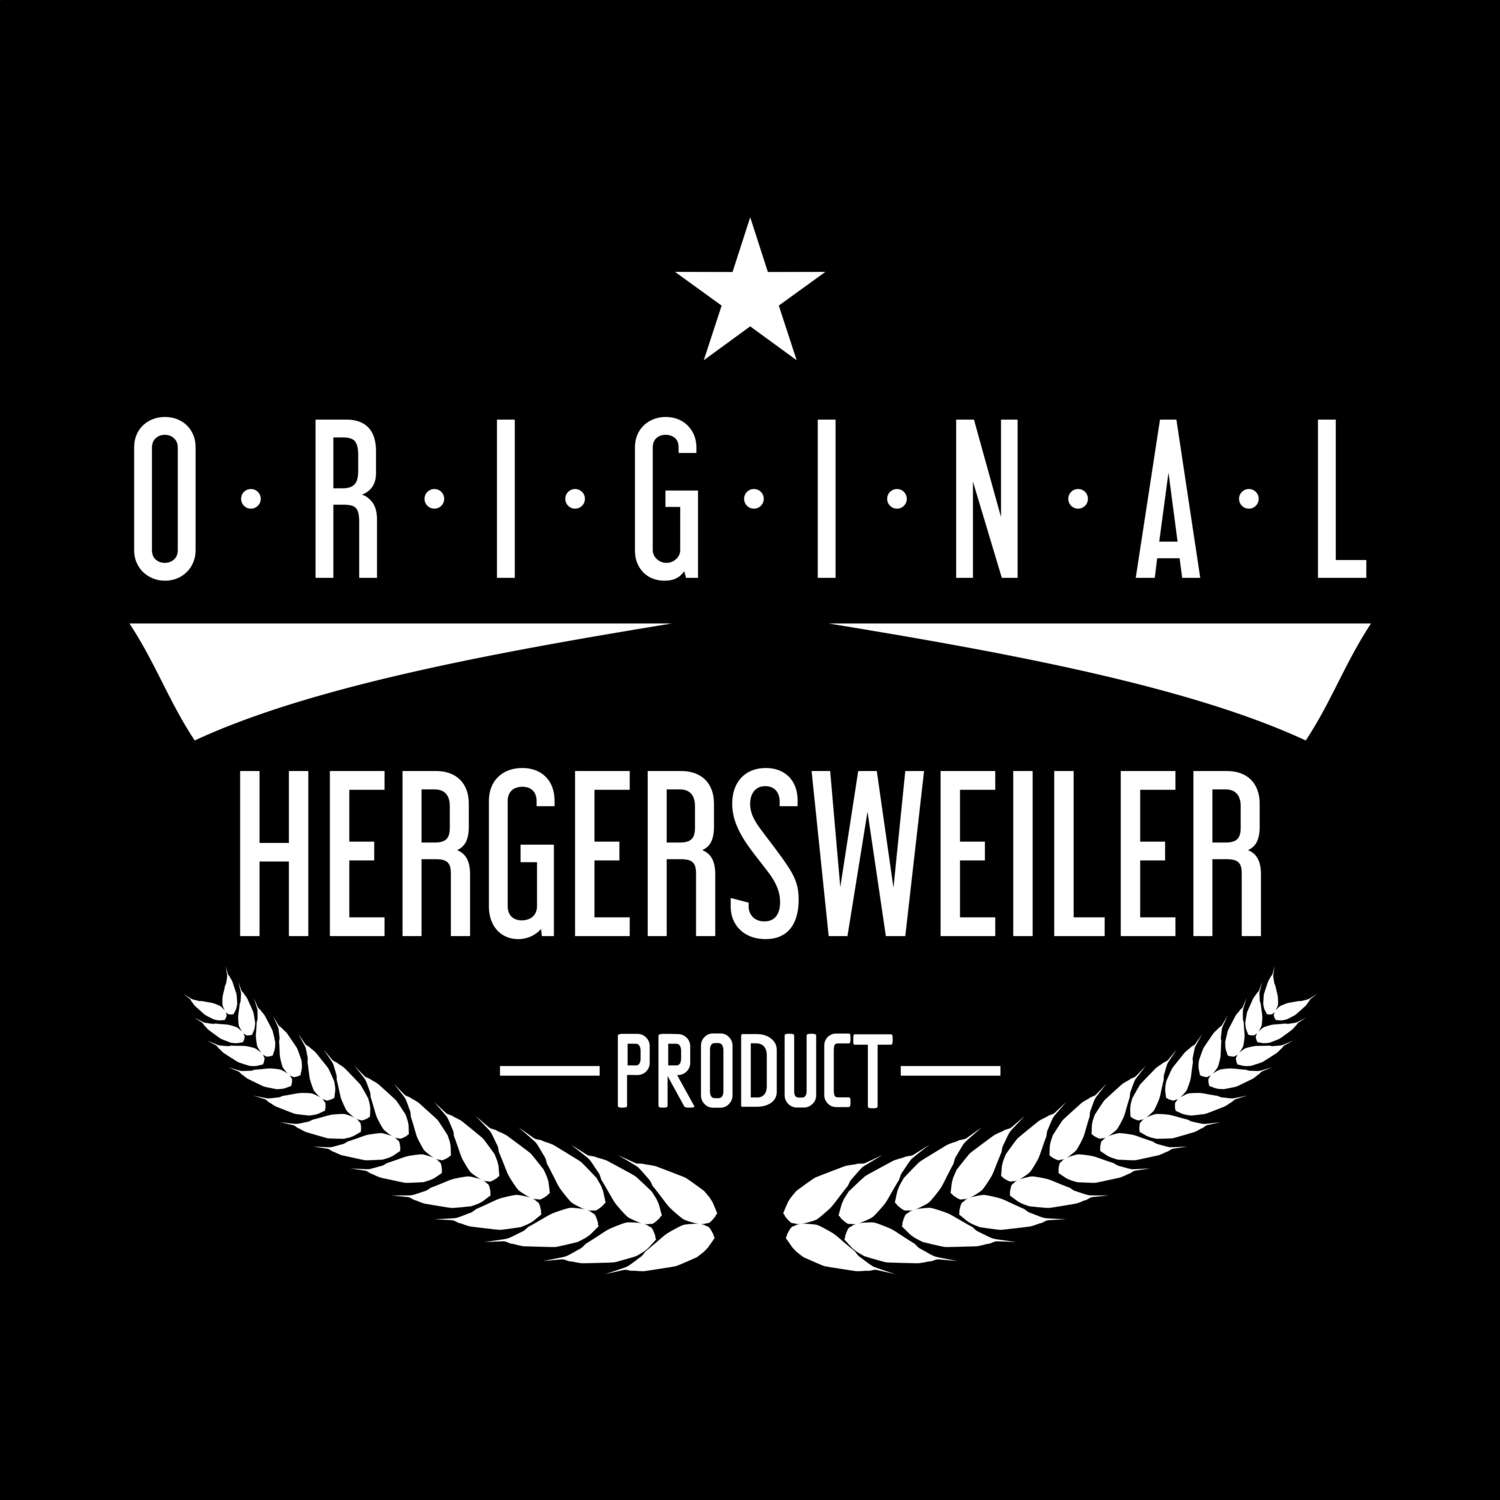 Hergersweiler T-Shirt »Original Product«